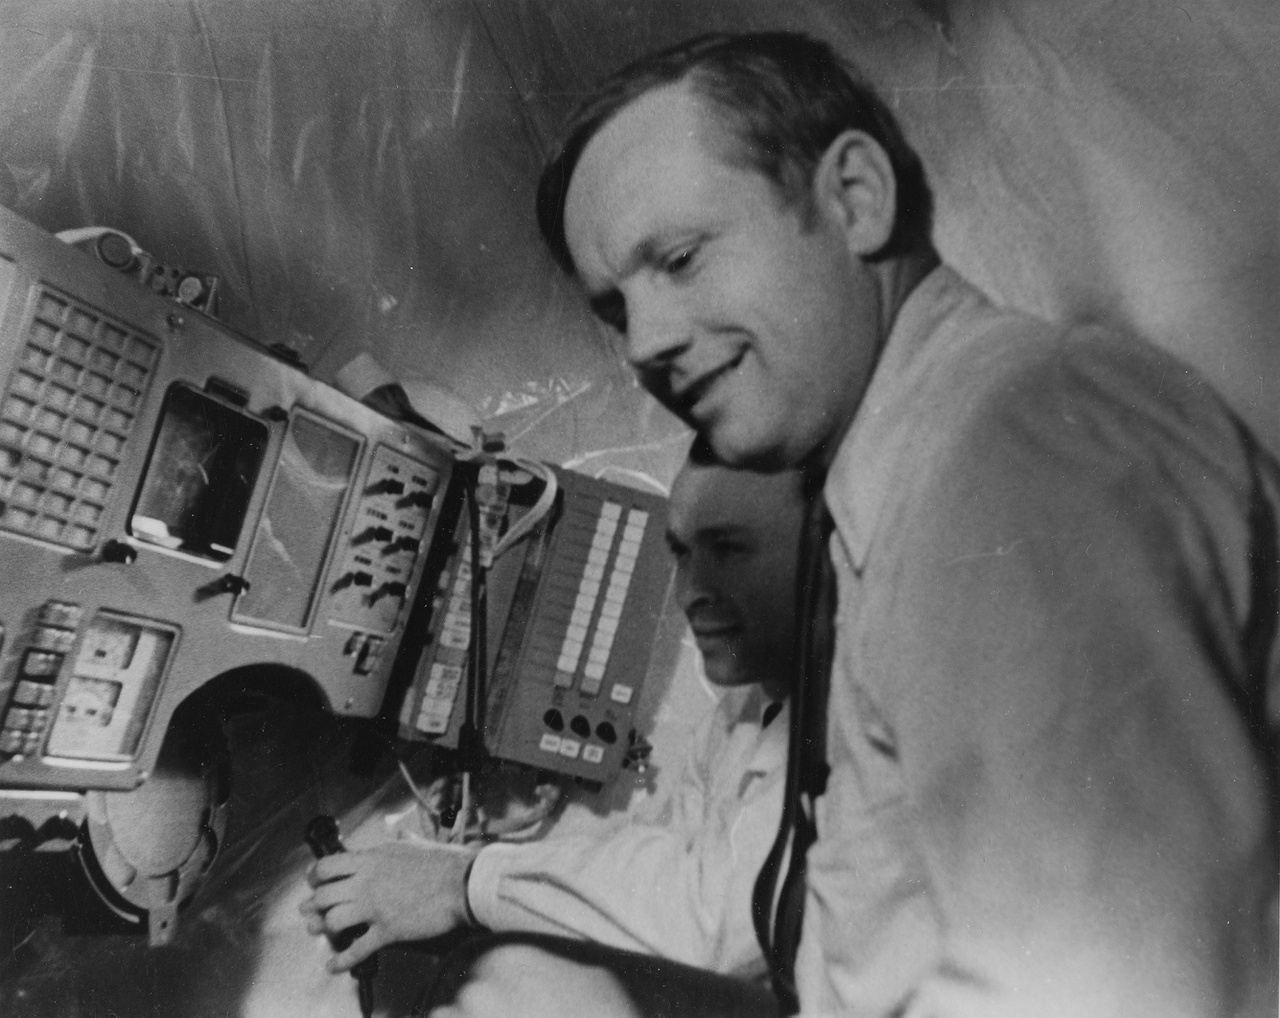 Ilyen képet se lehetett eddig sokszor látni: a XIII. COSPAR alkalmával Armstrongnak megmutatták egy Szojuz űrhajó műszerfalát, vezérlőegységét is, a kép tanúsága szerint az amerikai űrhajós érdeklődve figyelte a szovjet technikát.